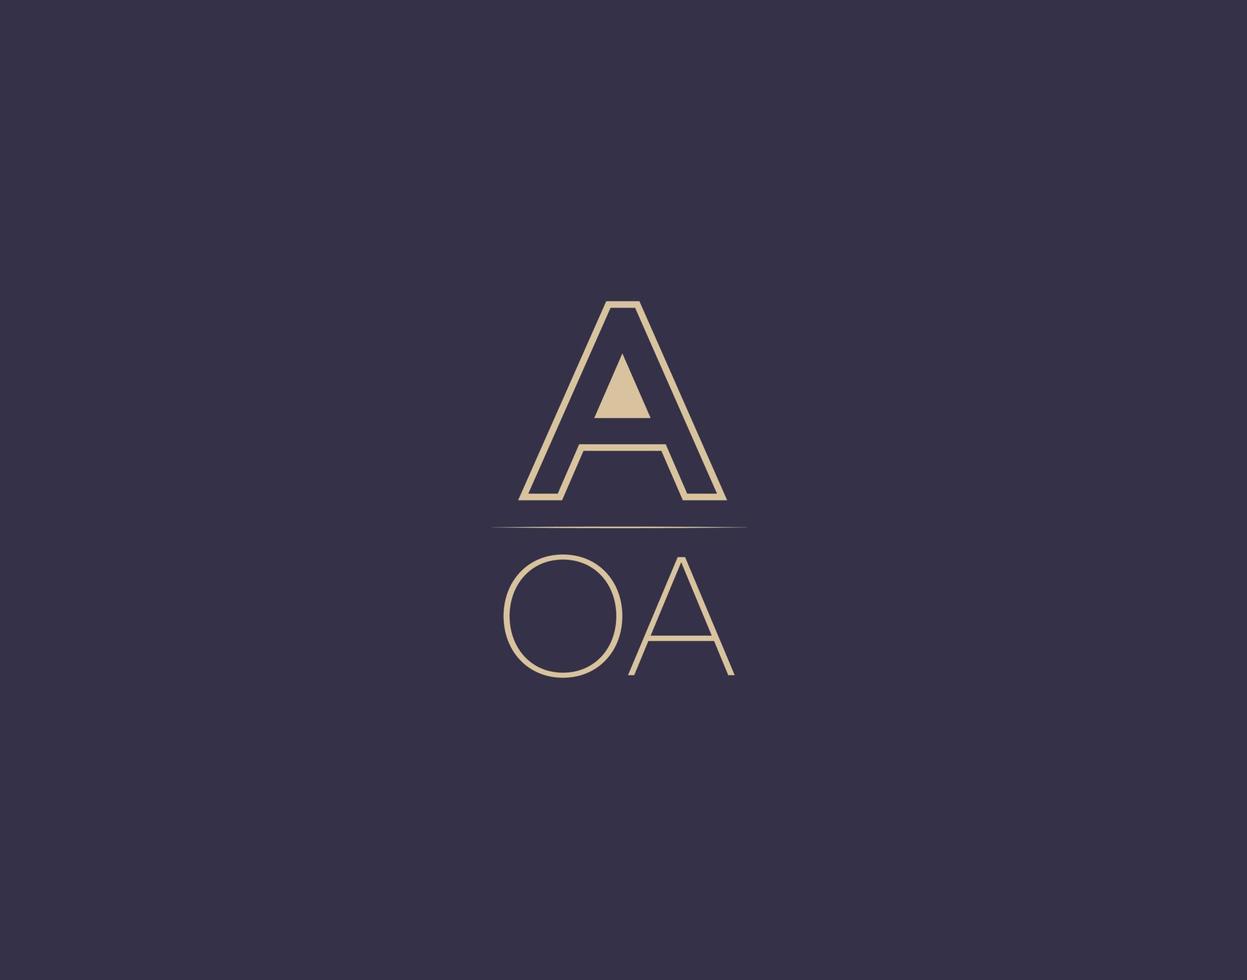 aoa lettera logo design moderno minimalista vettore immagini